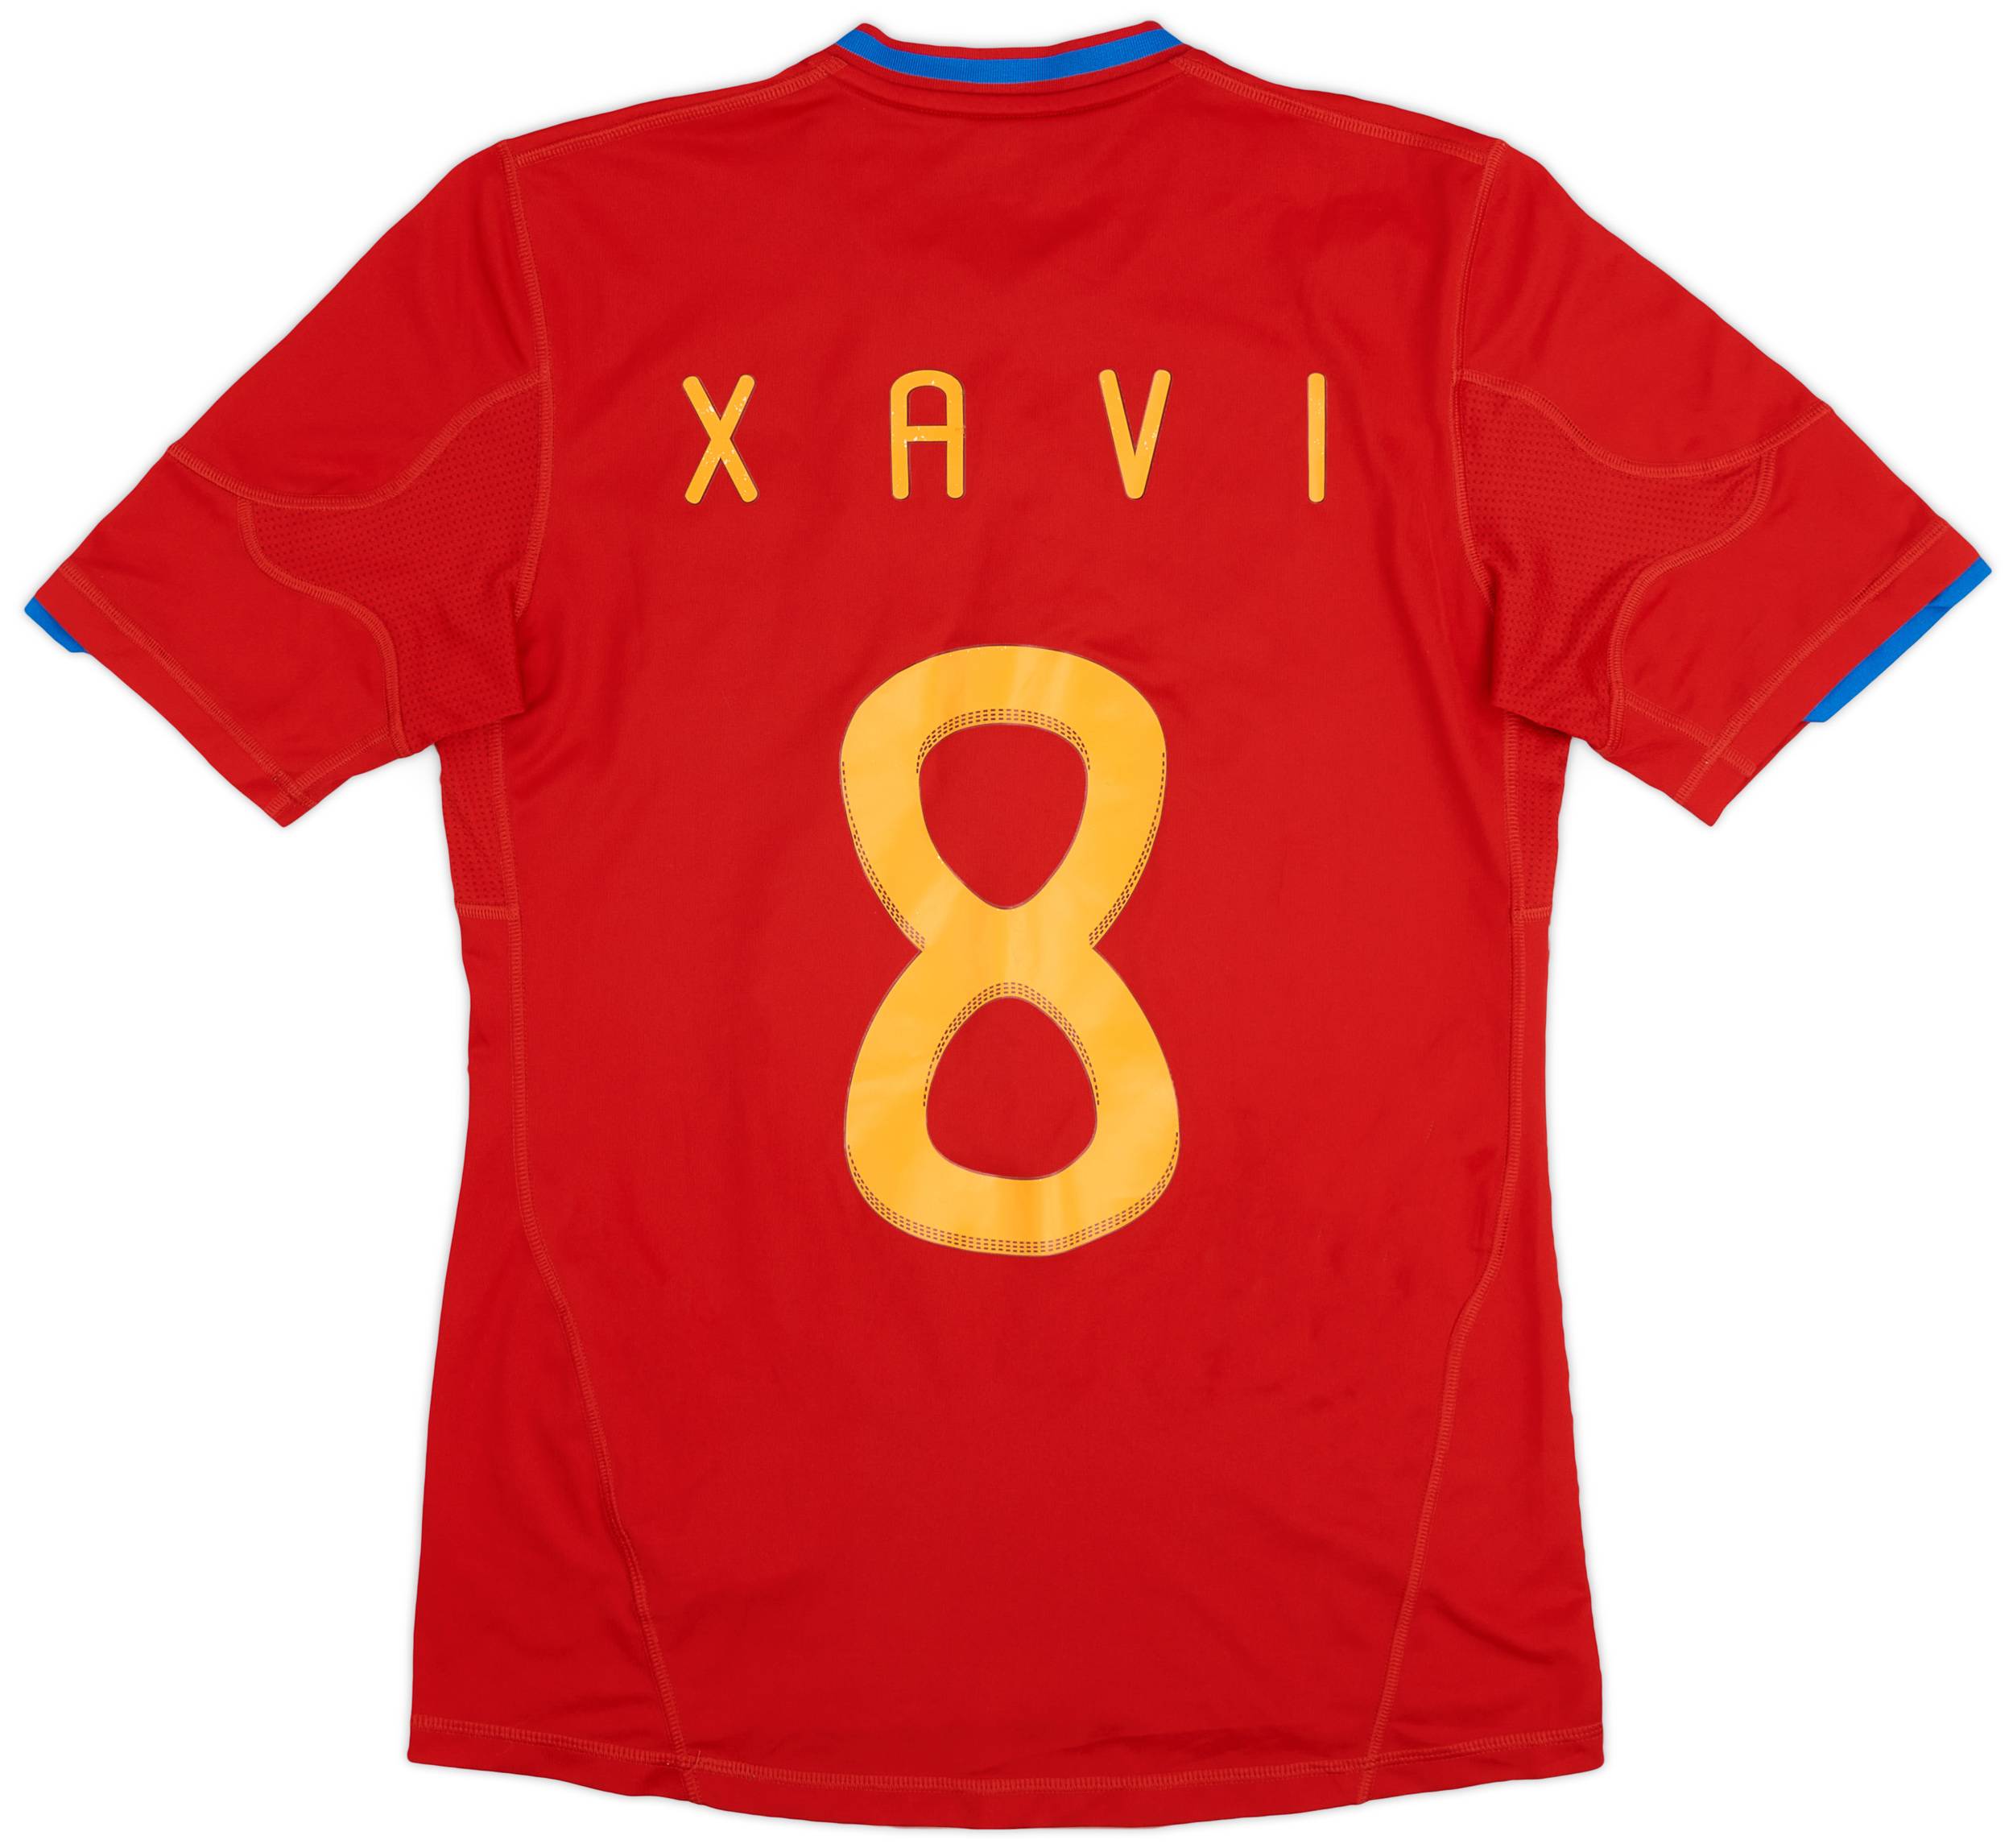 2009-10 Spain Home Shirt Xavi #8 - 7/10 - (S)